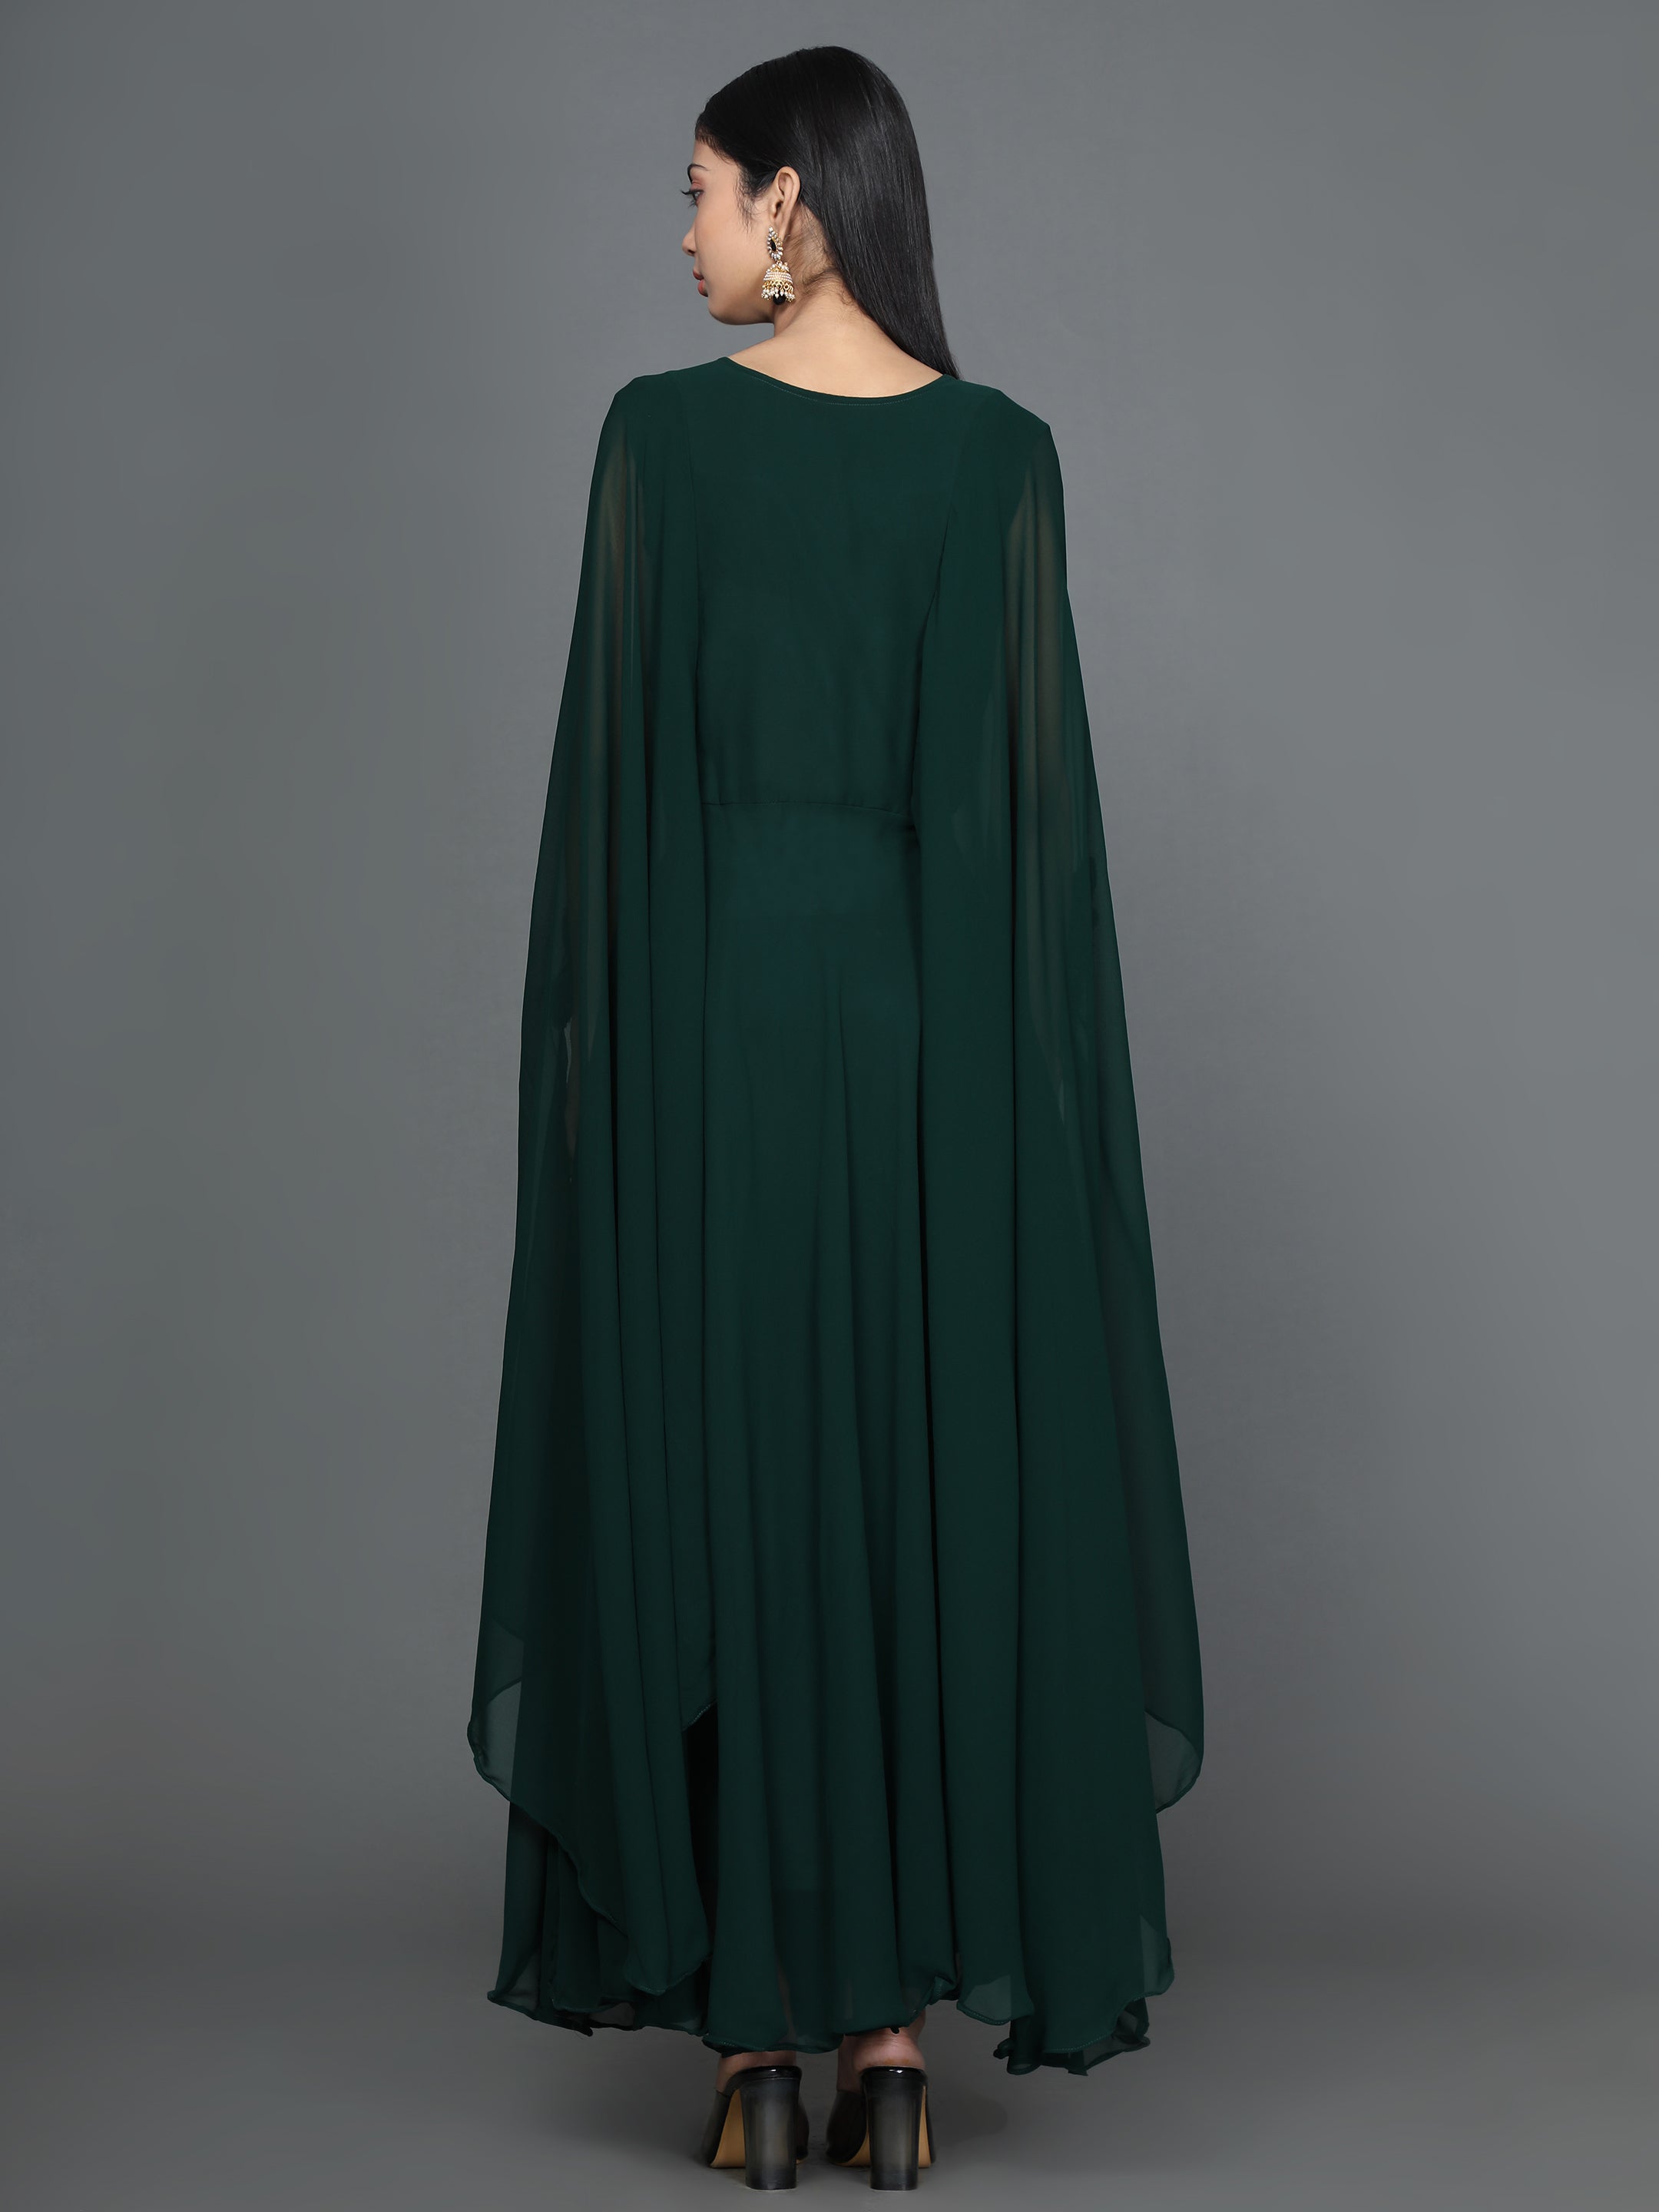 Women's Green Straight Georgette Gown - Noz2Toz